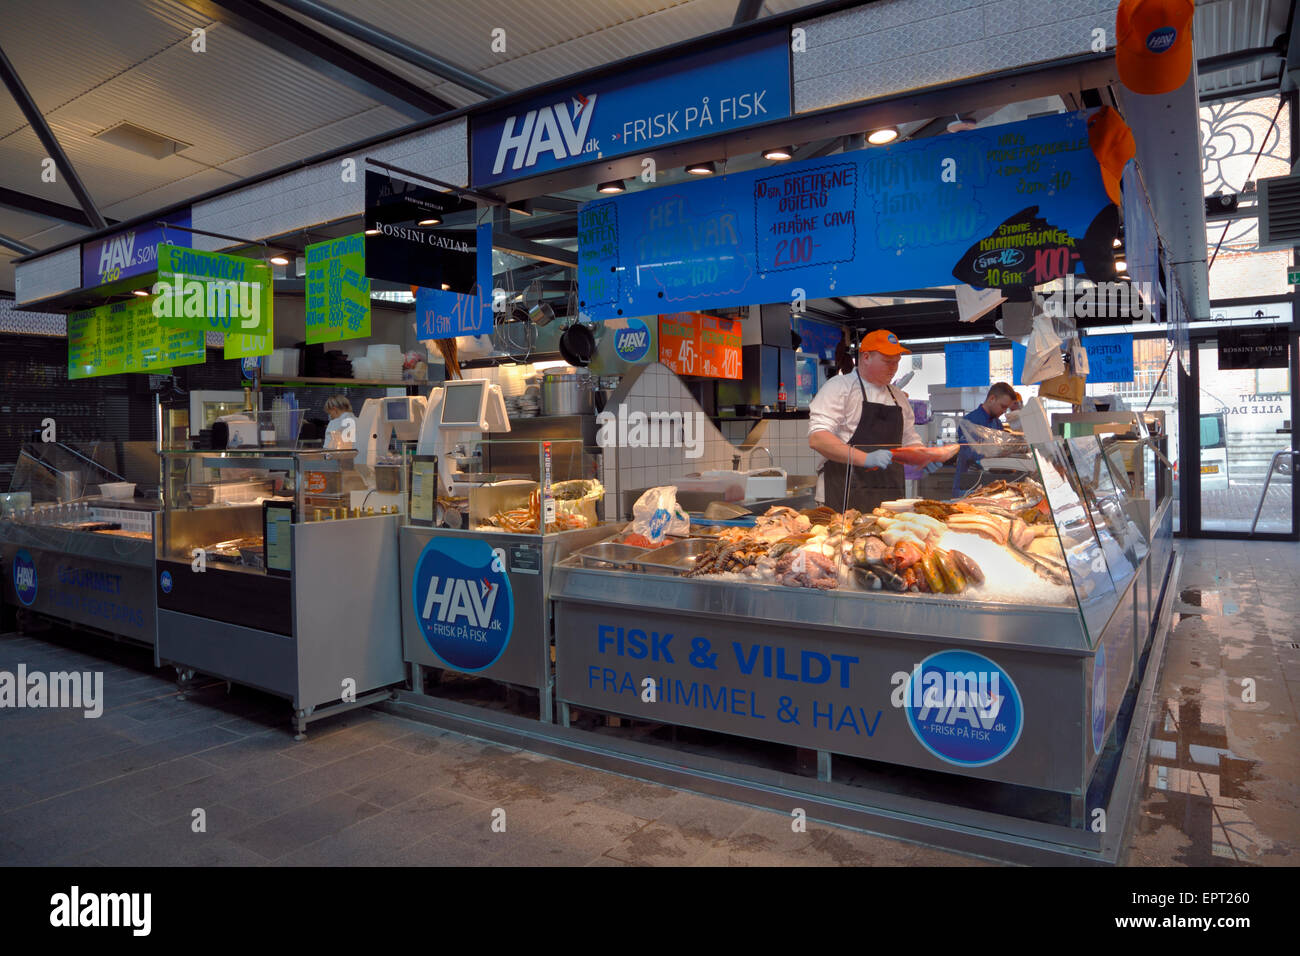 The fishmonger's stall in the covered food market, Torvehallerne, at Israels Square, Copenhagen, Denmark. Stock Photo